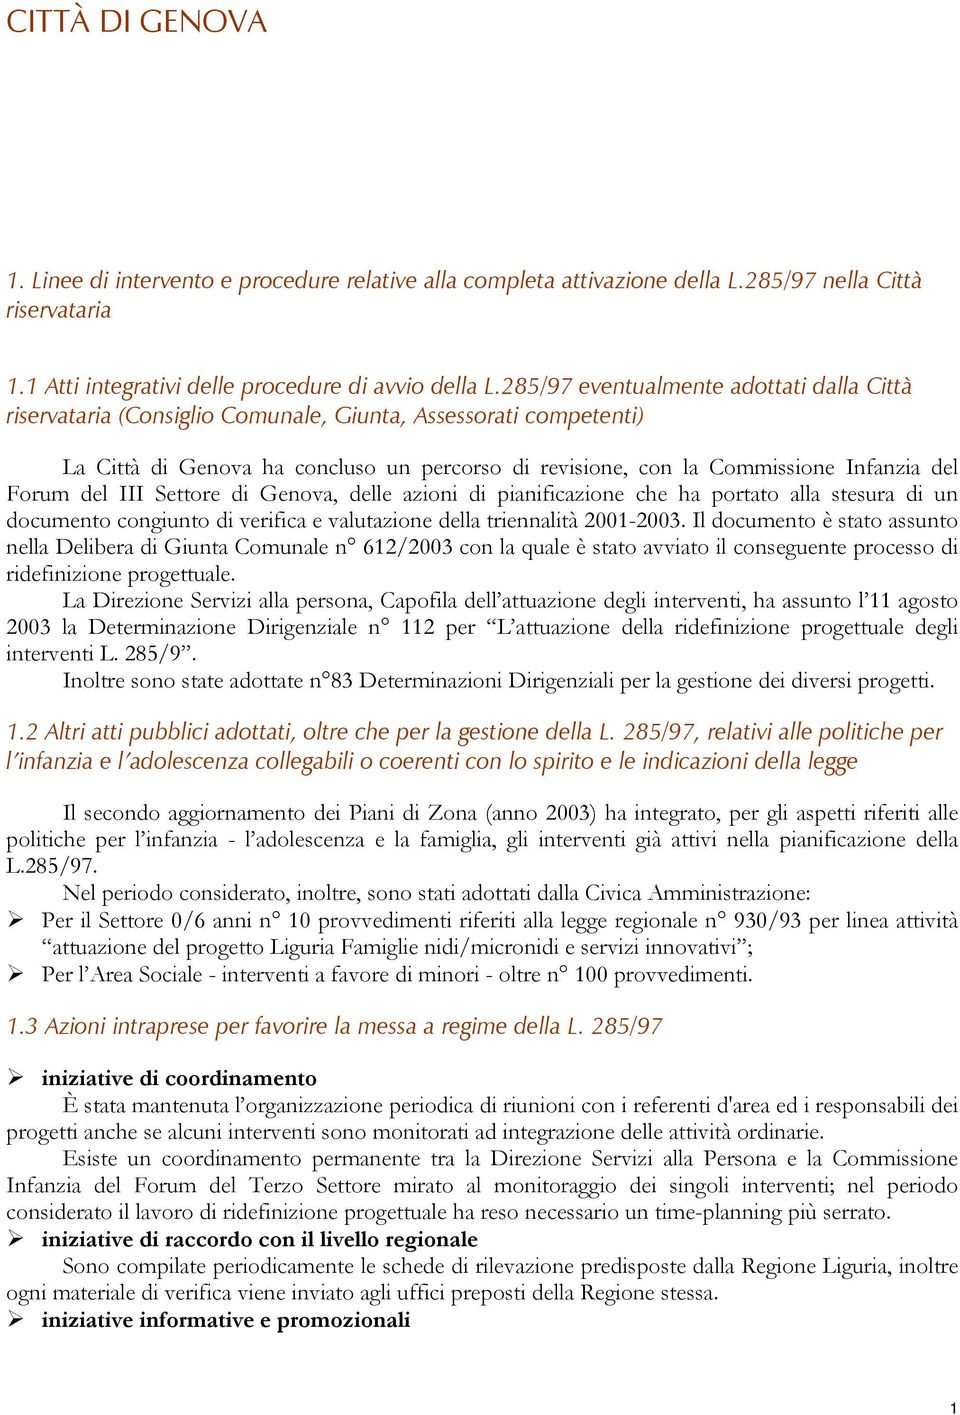 Forum del III Settore di Genova, delle azioni di pianificazione che ha portato alla stesura di un documento congiunto di verifica e valutazione della triennalità 2001-2003.